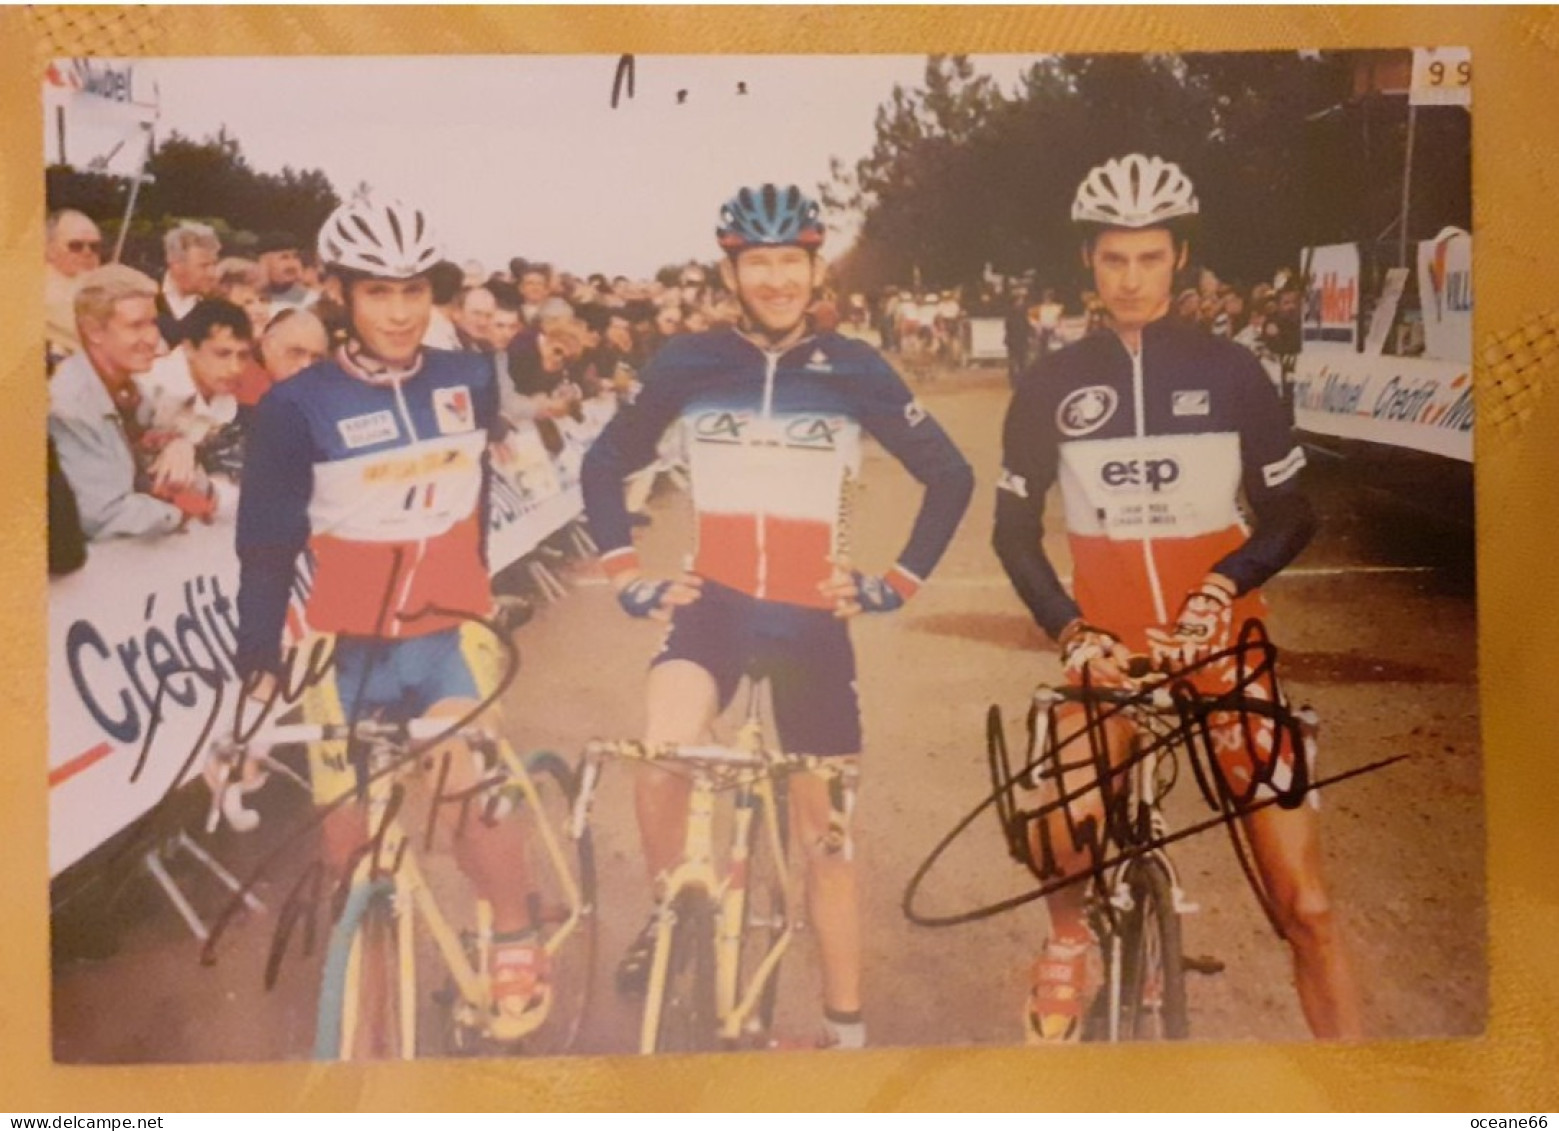 Autographes David Derepas Et Christophe Morel Avec François Simon Champions De France - Cycling